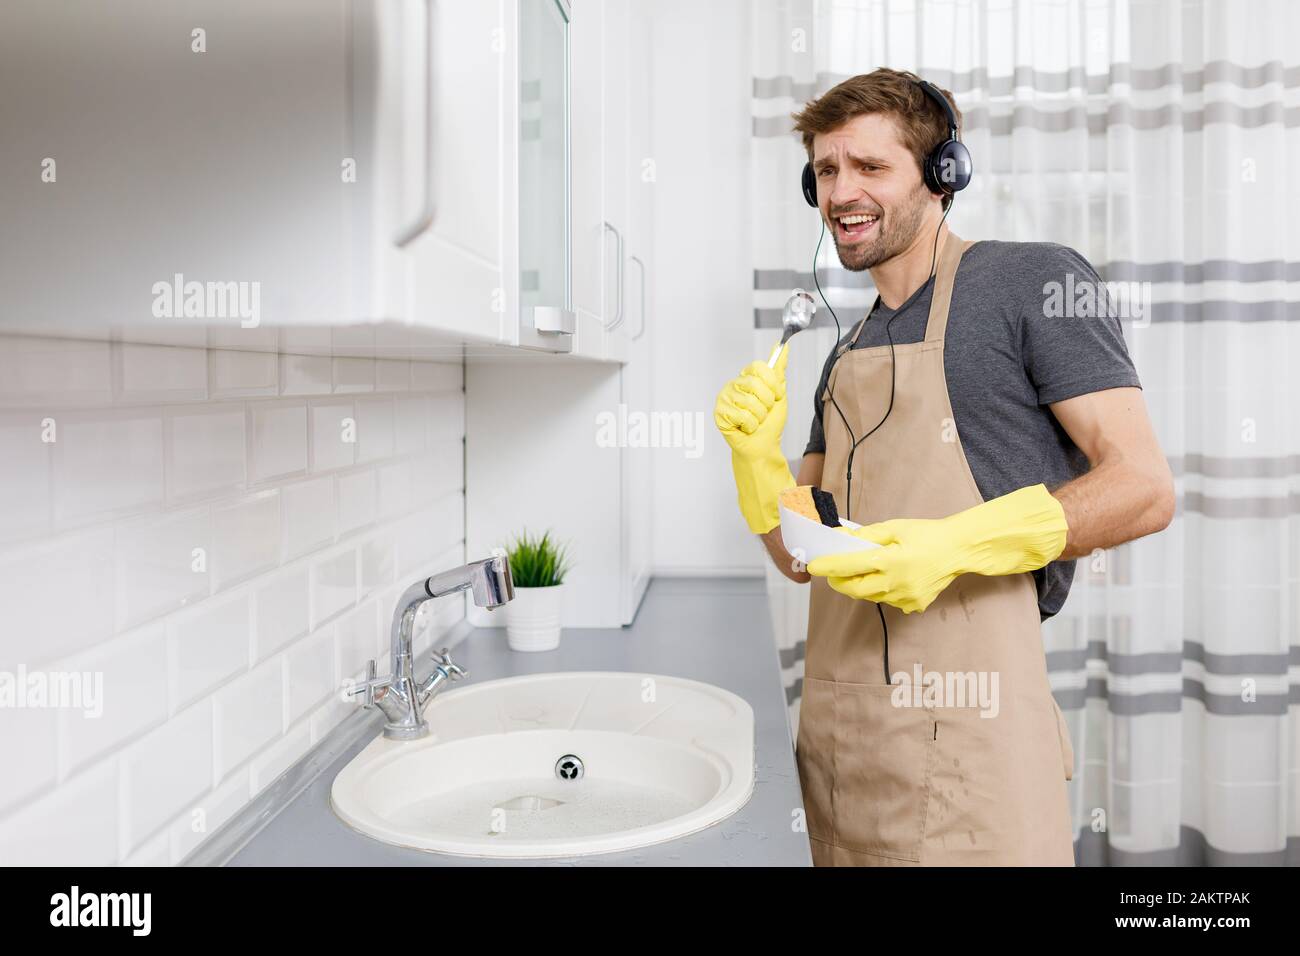 Jeune homme dans un casque chantant avec une cuillère comme un microphone pendant le lavage de la vaisselle Banque D'Images